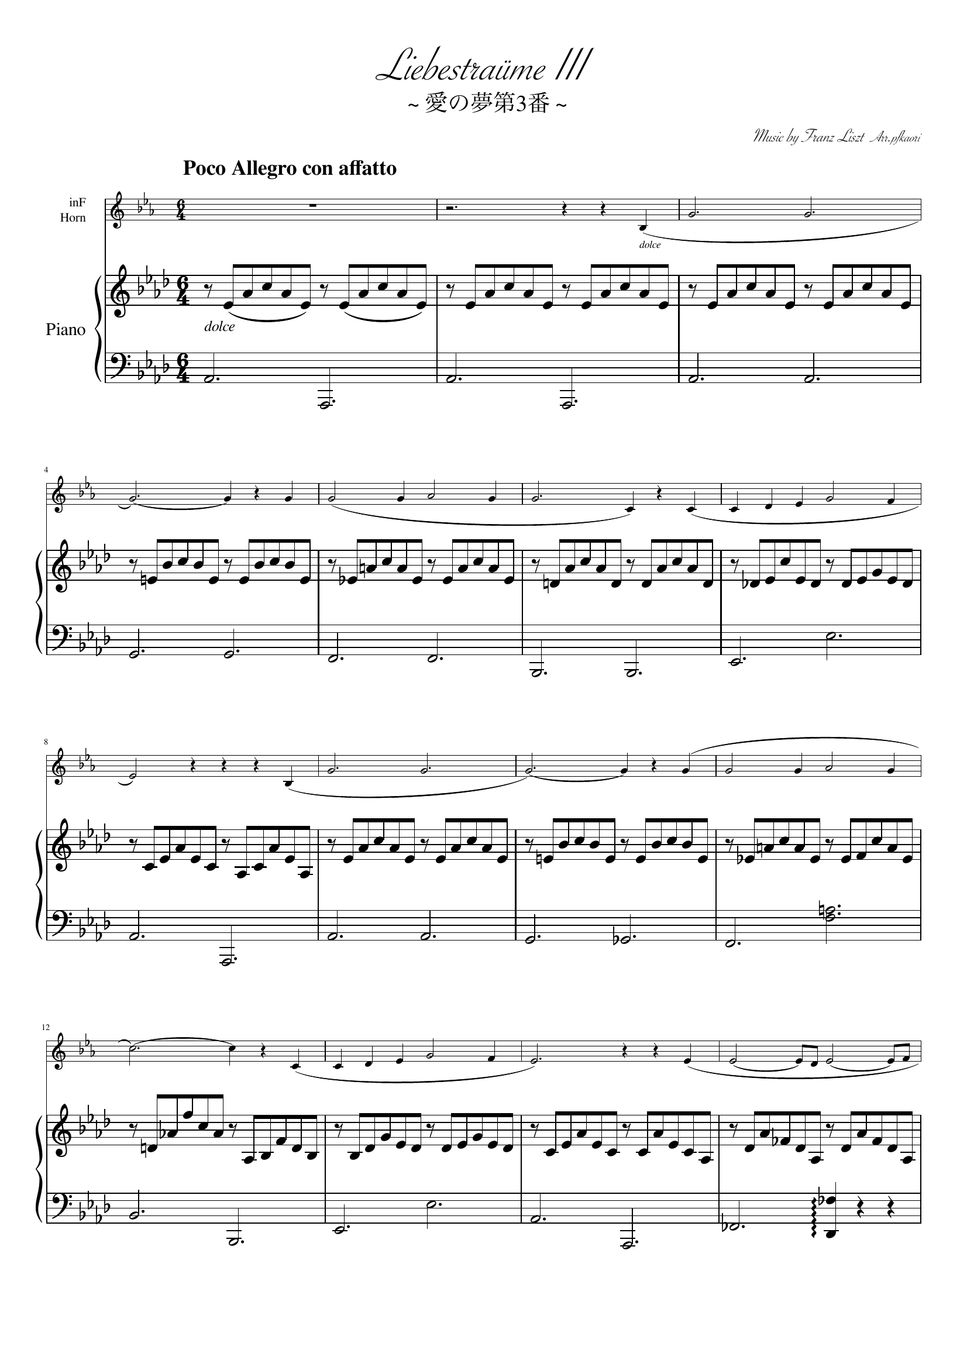 Franz Liszt - Liebestraum No. 3 (As・horn & piano) by pfkaori